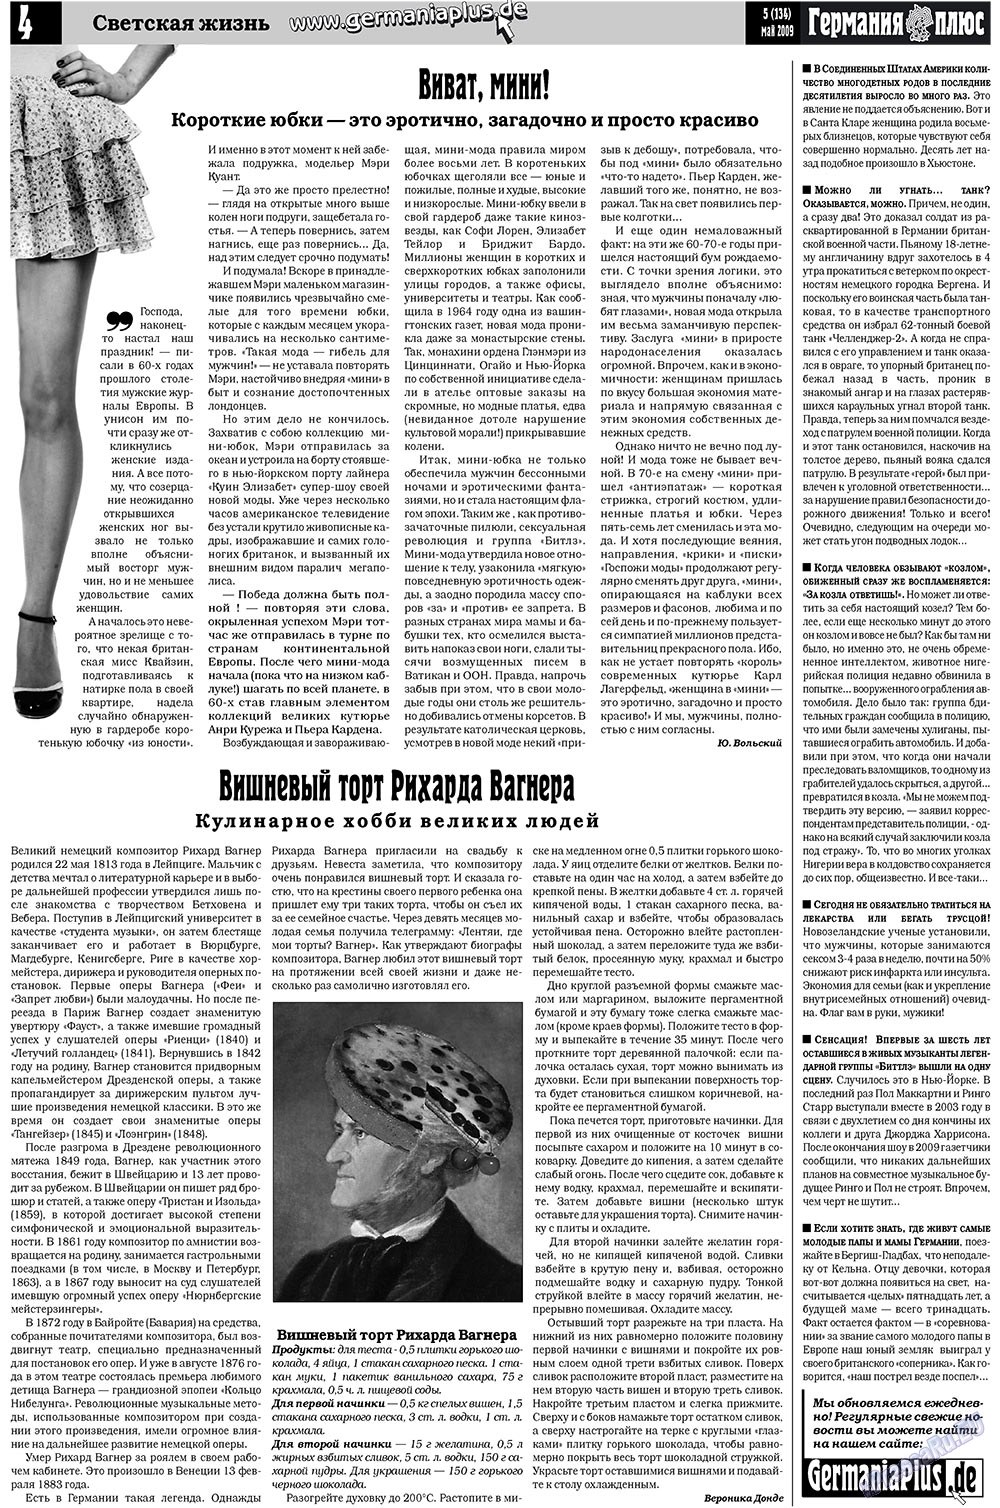 Германия плюс (газета). 2009 год, номер 5, стр. 4